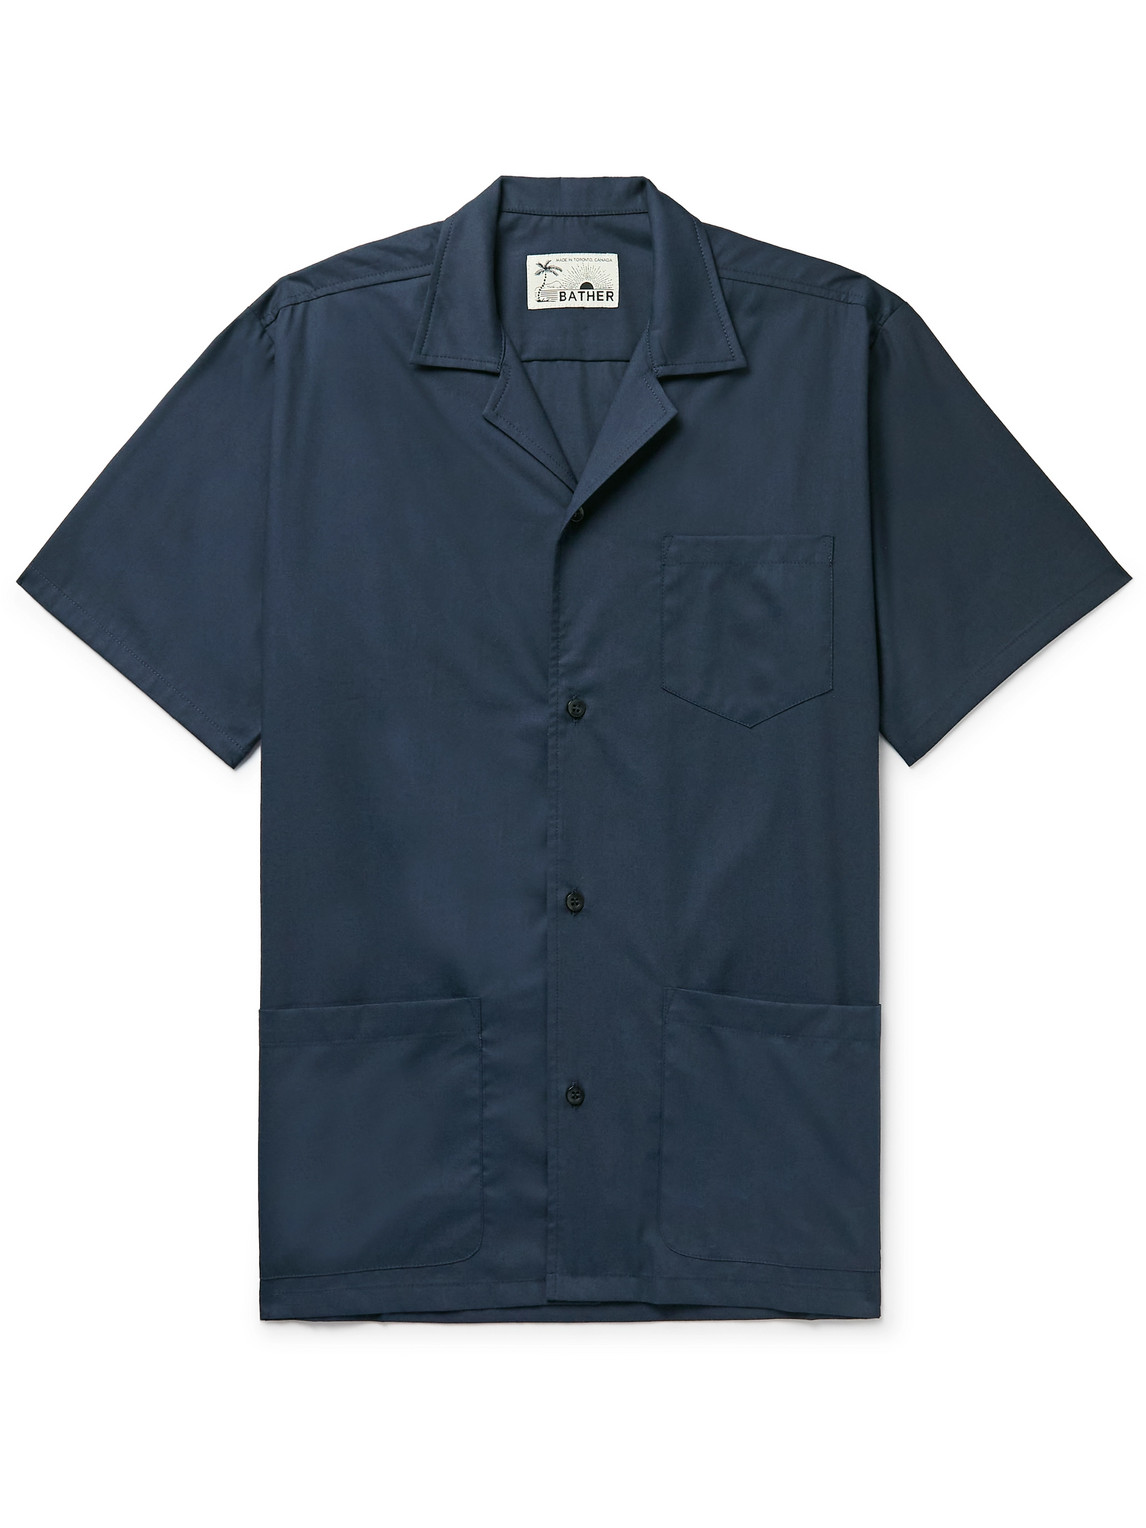 Bather Traveler Camp-Collar Cotton-Blend Poplin Shirt